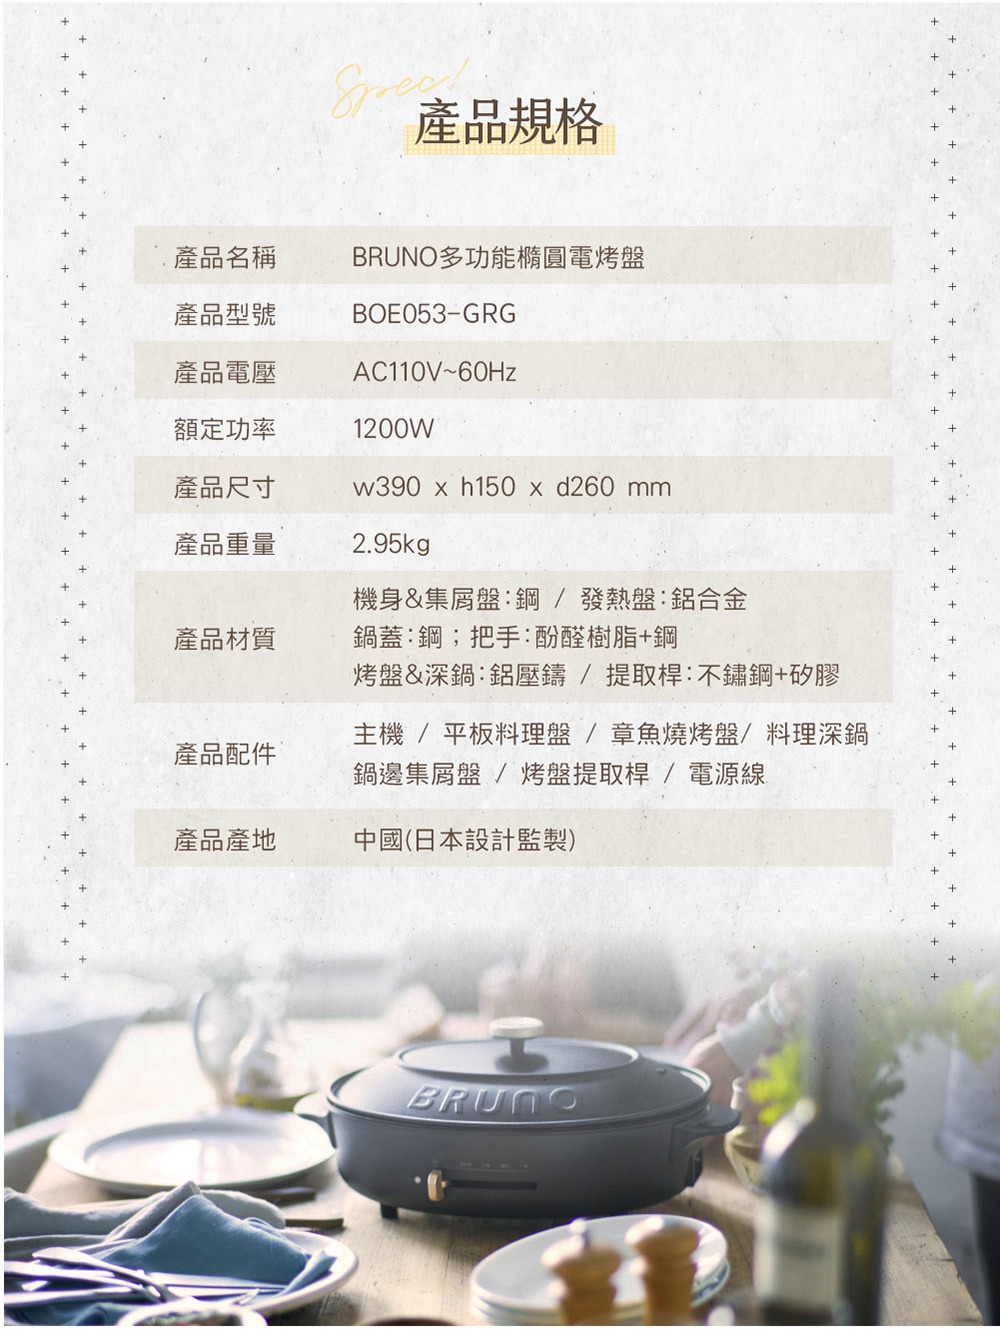 BRUNO BOE053 BK-CE橢圓形電烤盤產品規格表。